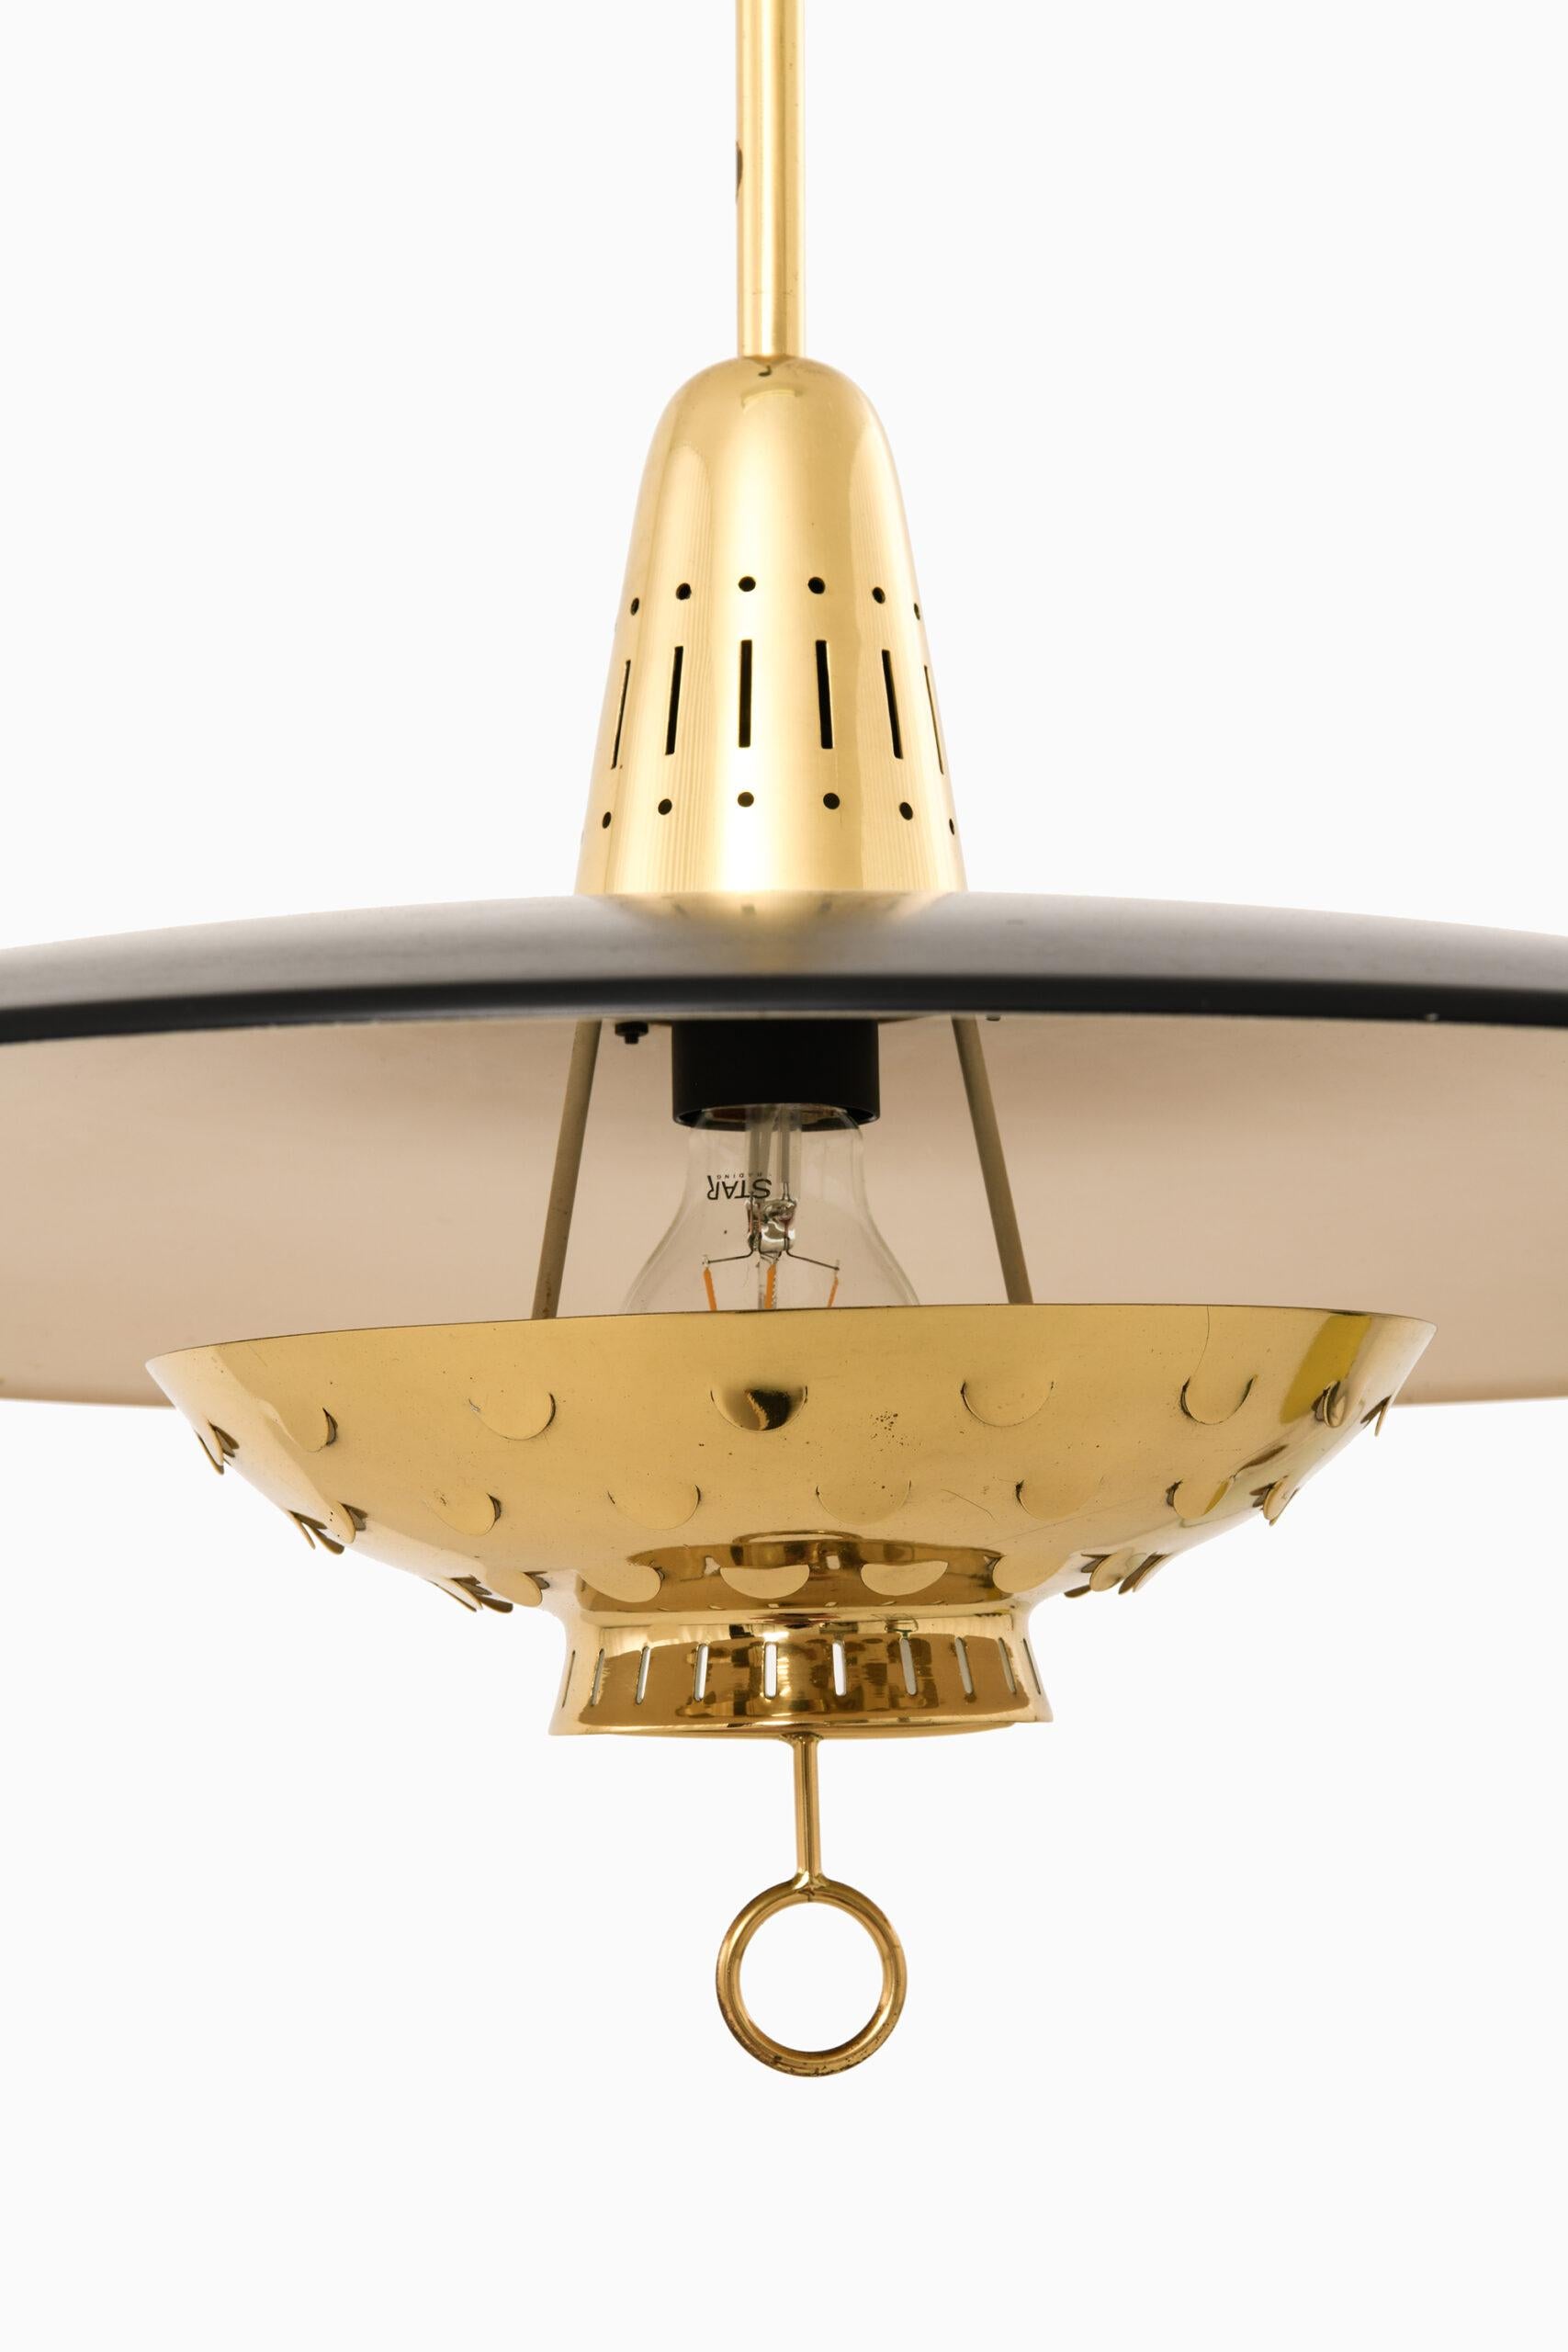 Rare lampe de plafond d'un designer inconnu. Produit par Boréns en Suède.
Hauteur : 105-170 cm.